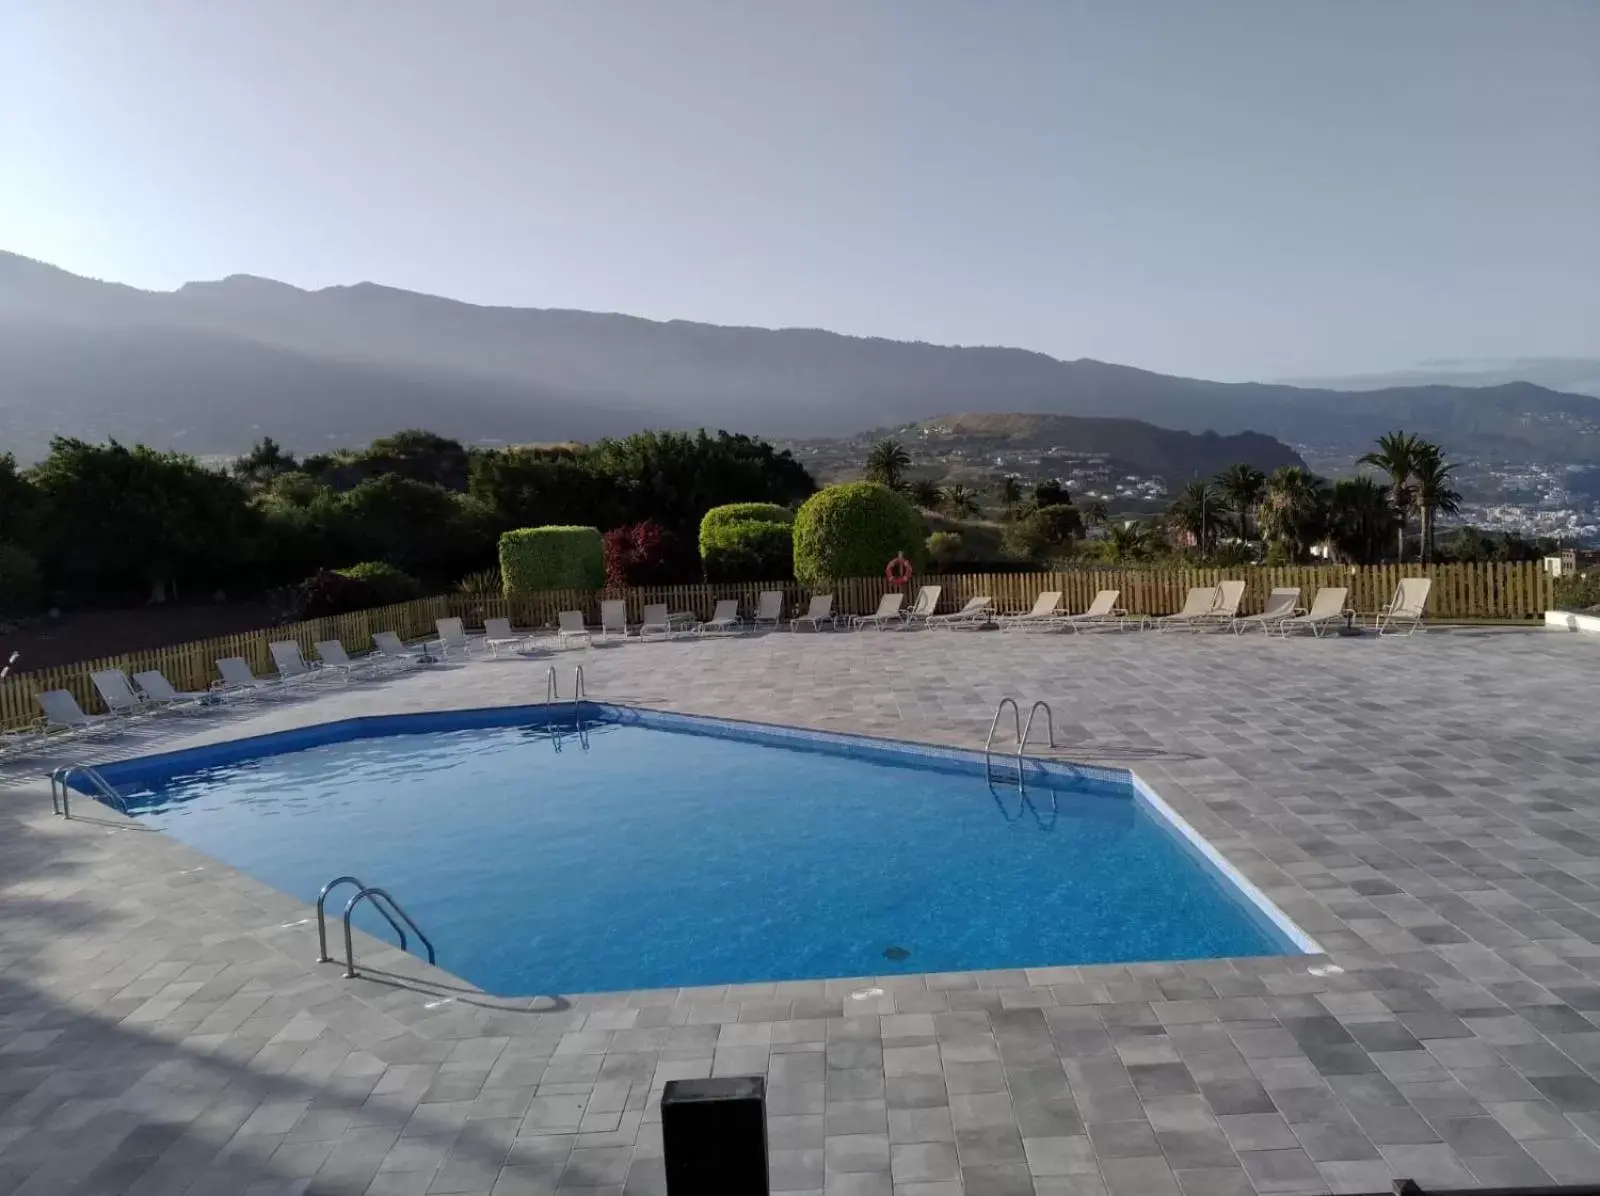 Swimming Pool in Parador de La Palma